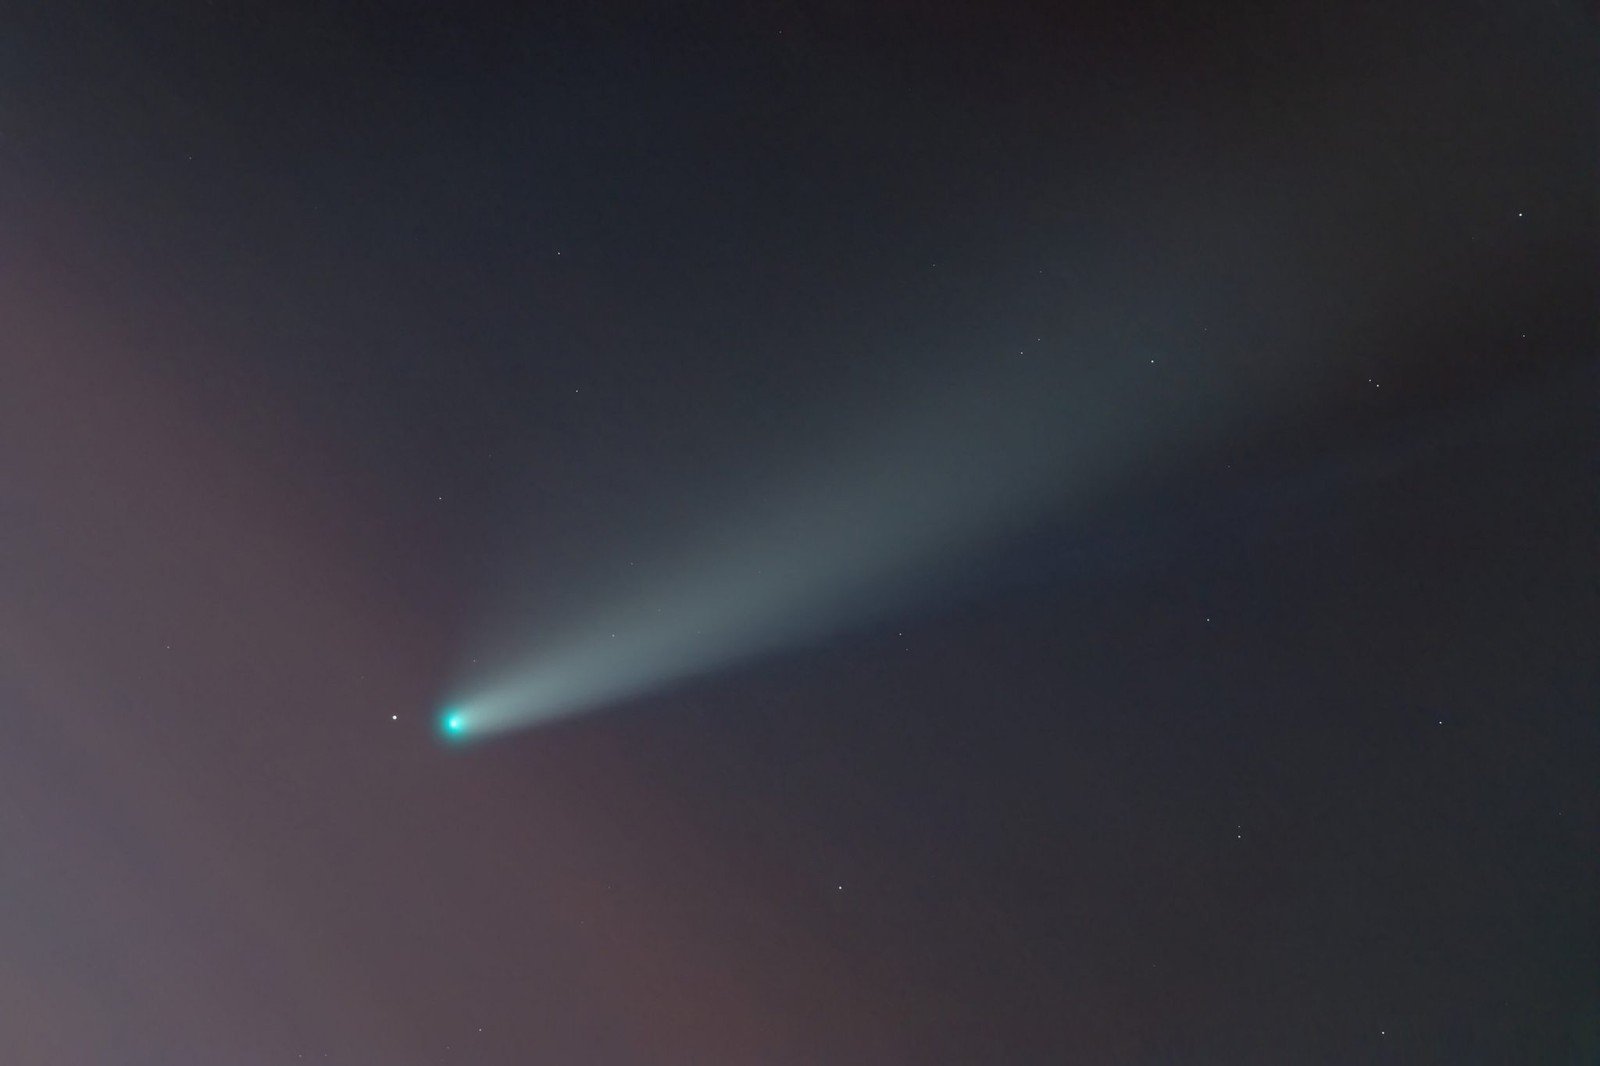 Zobaczcie, jak efektownie wygląda ta ginąca kometa